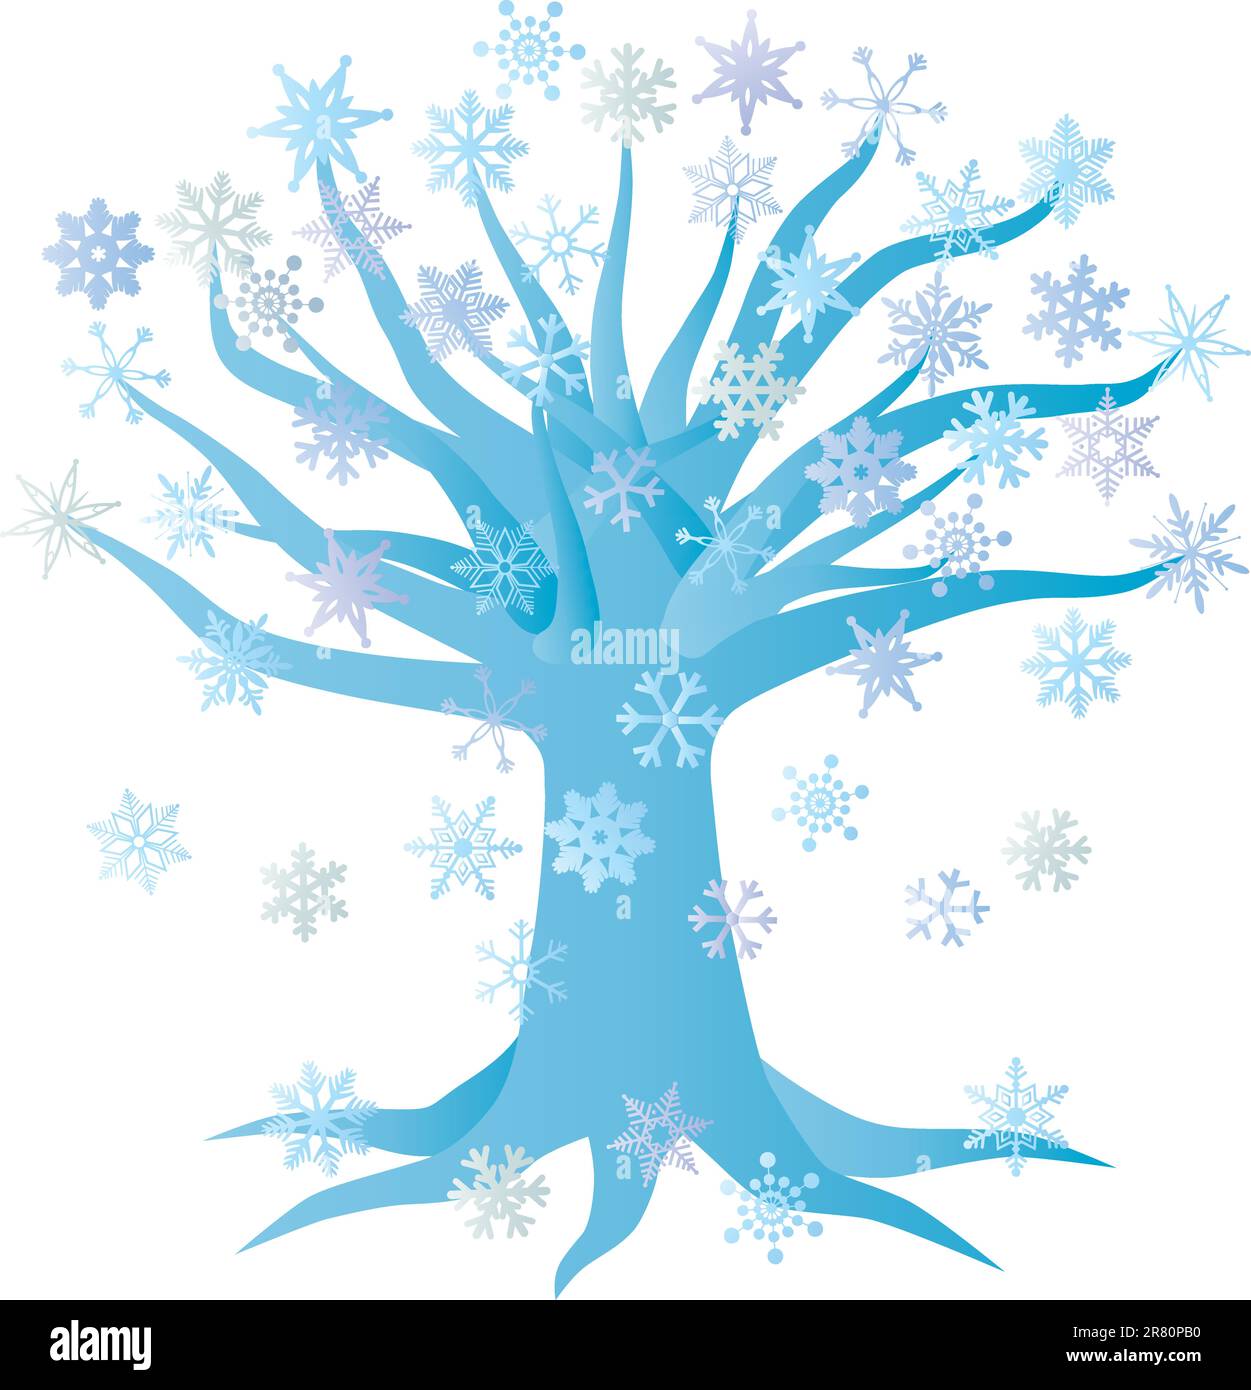 Winter-Weihnachtsbaum mit Schneeflocken-Illustration, Isolated on White Background Stock Vektor